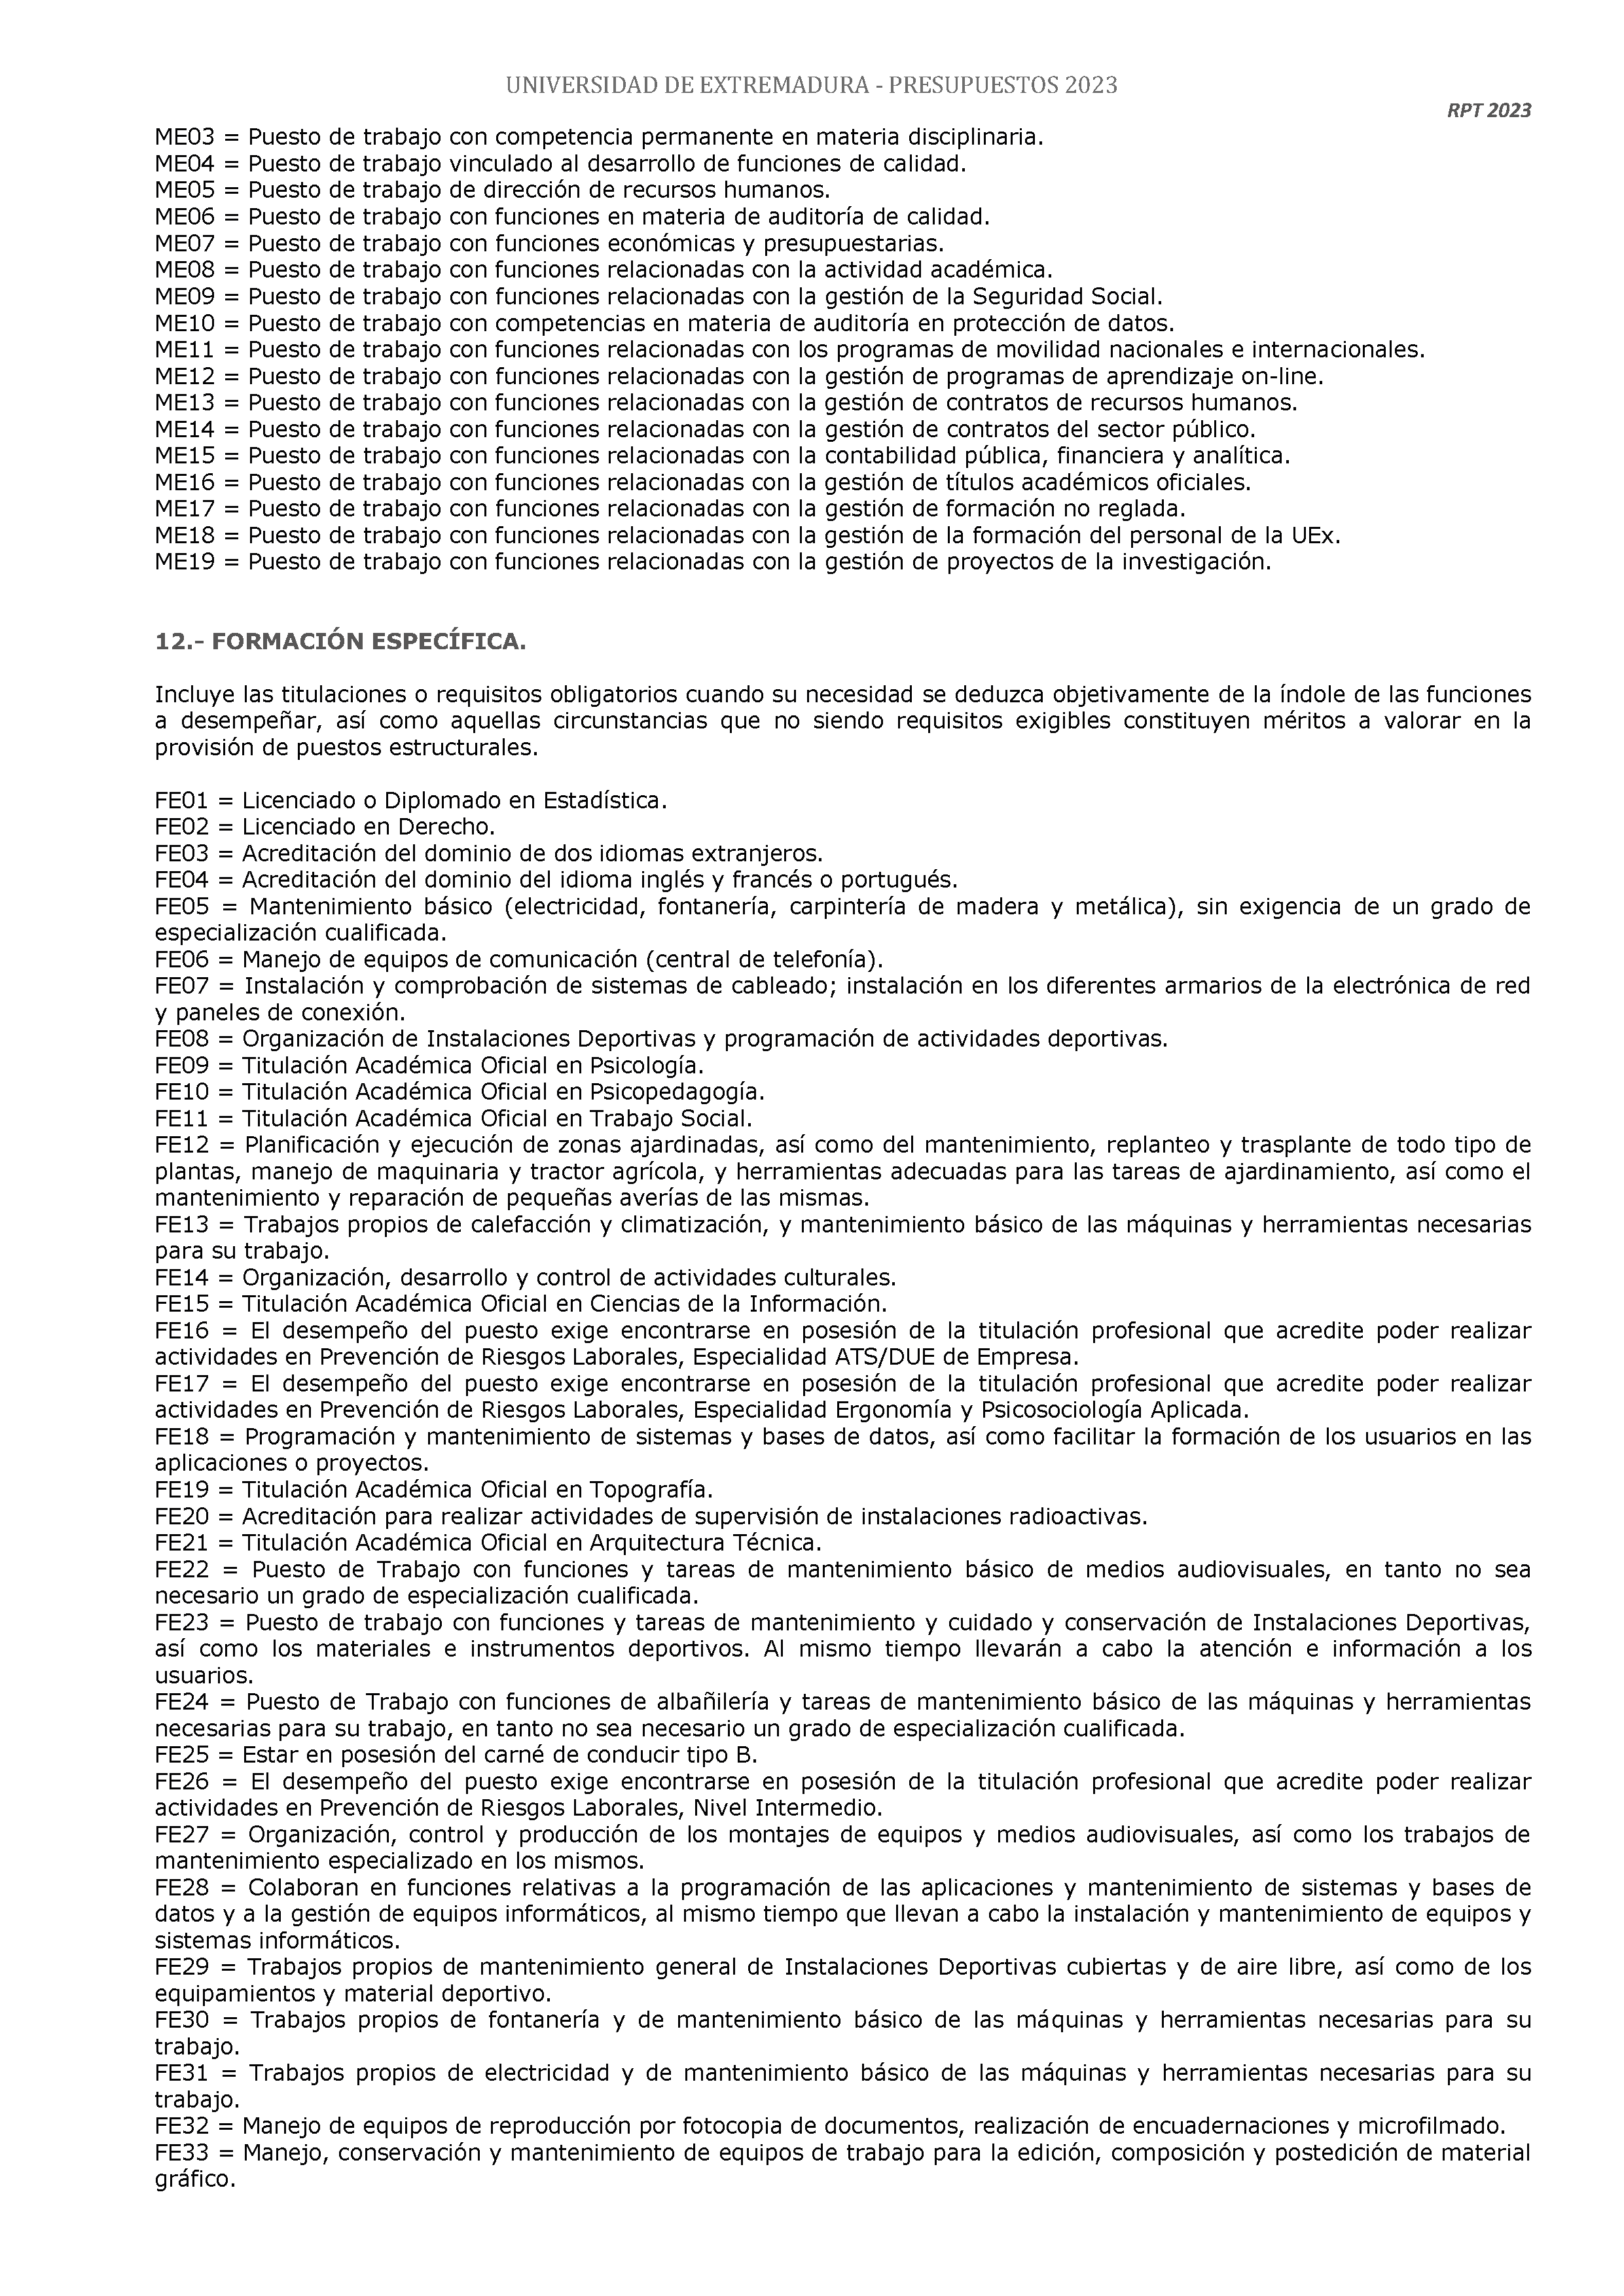 ANEXO - ESTADO NUMERICO DEL PRESUPUESTO Pag 130